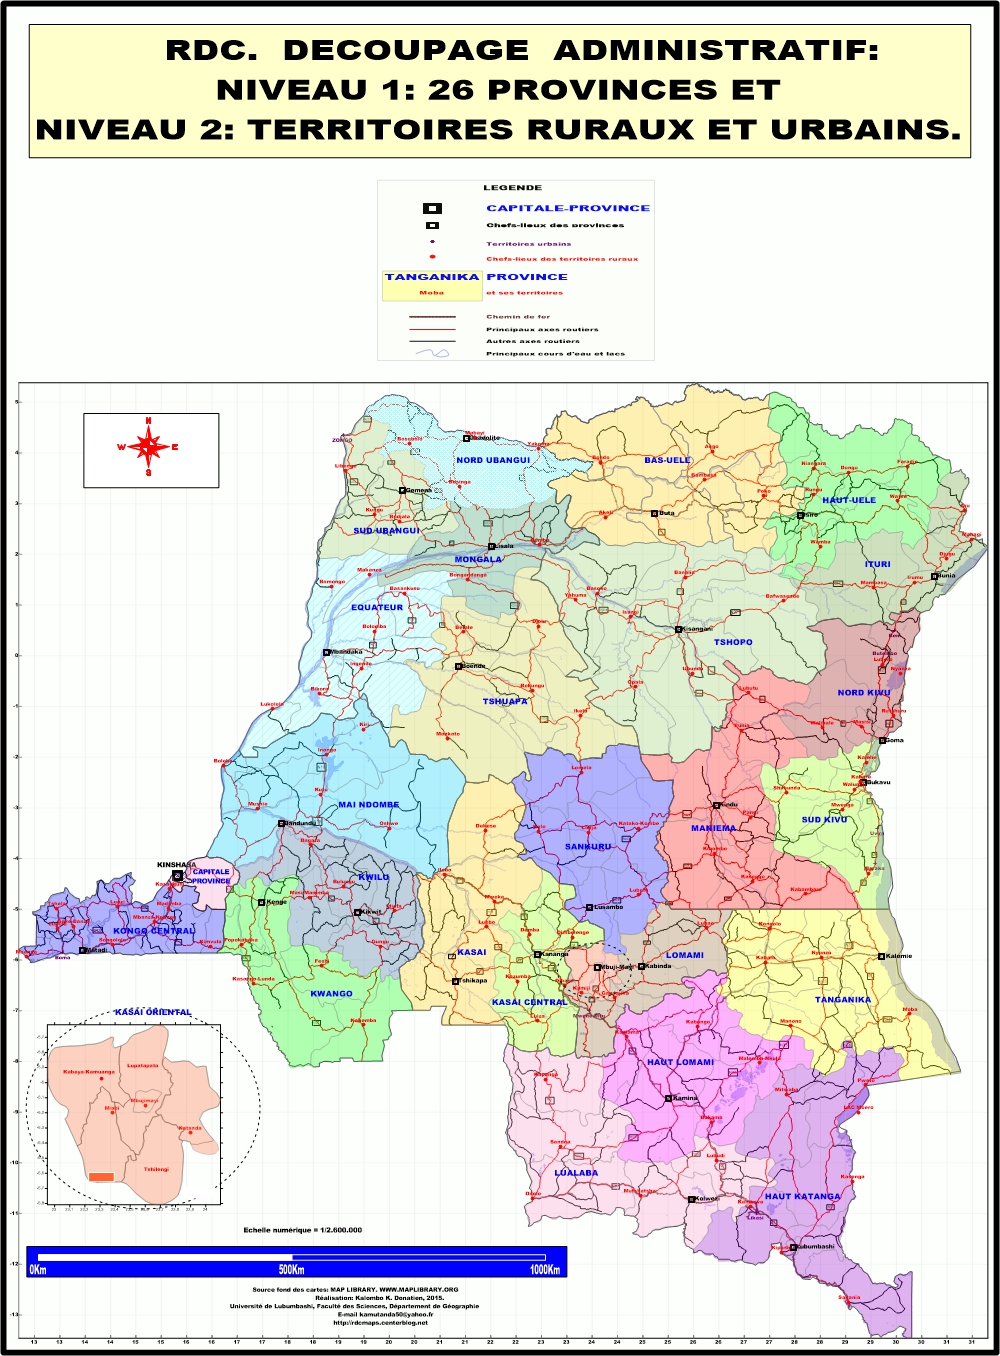 RDC DECOUPAGE EN 26 PROVINCES